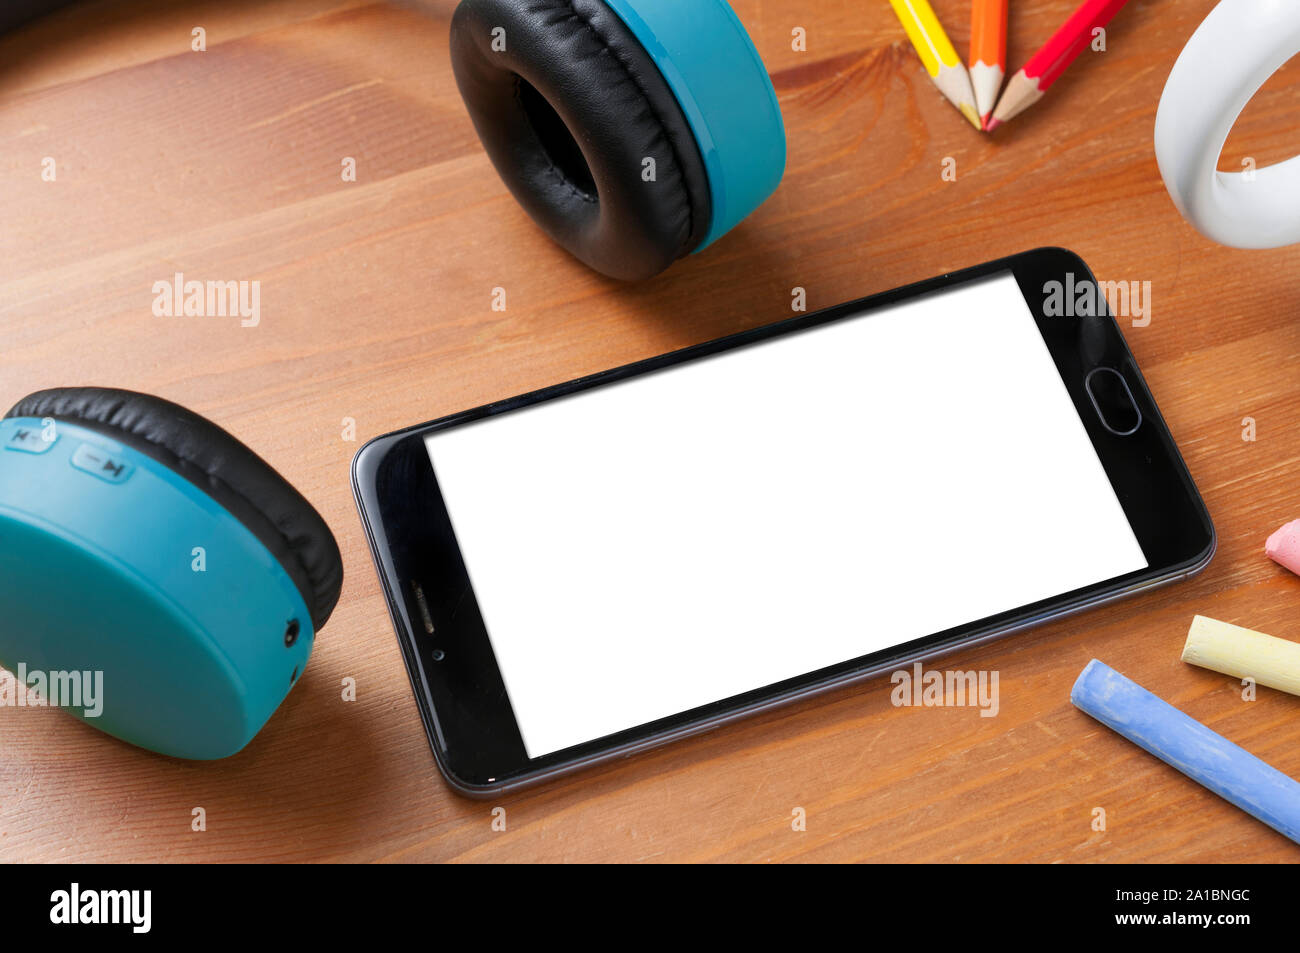 Smartphone écran vide sur une table en bois à côté d'une paire d'écouteurs sans fil, des crayons et des craies Banque D'Images